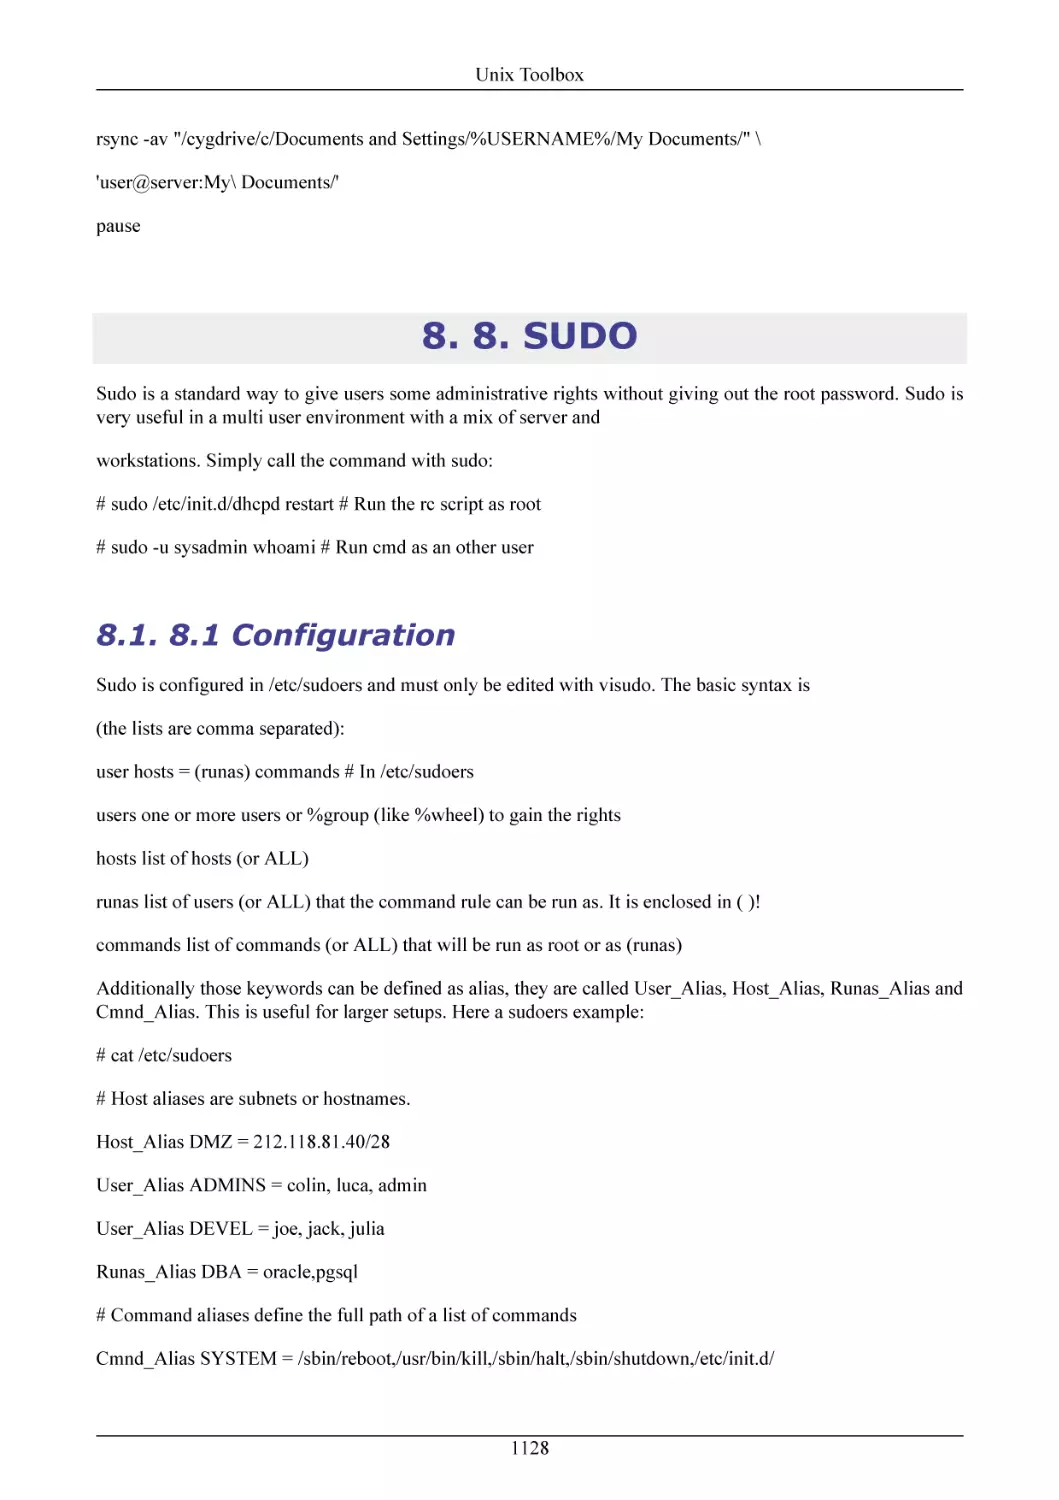 8. SUDO
8.1 Configuration